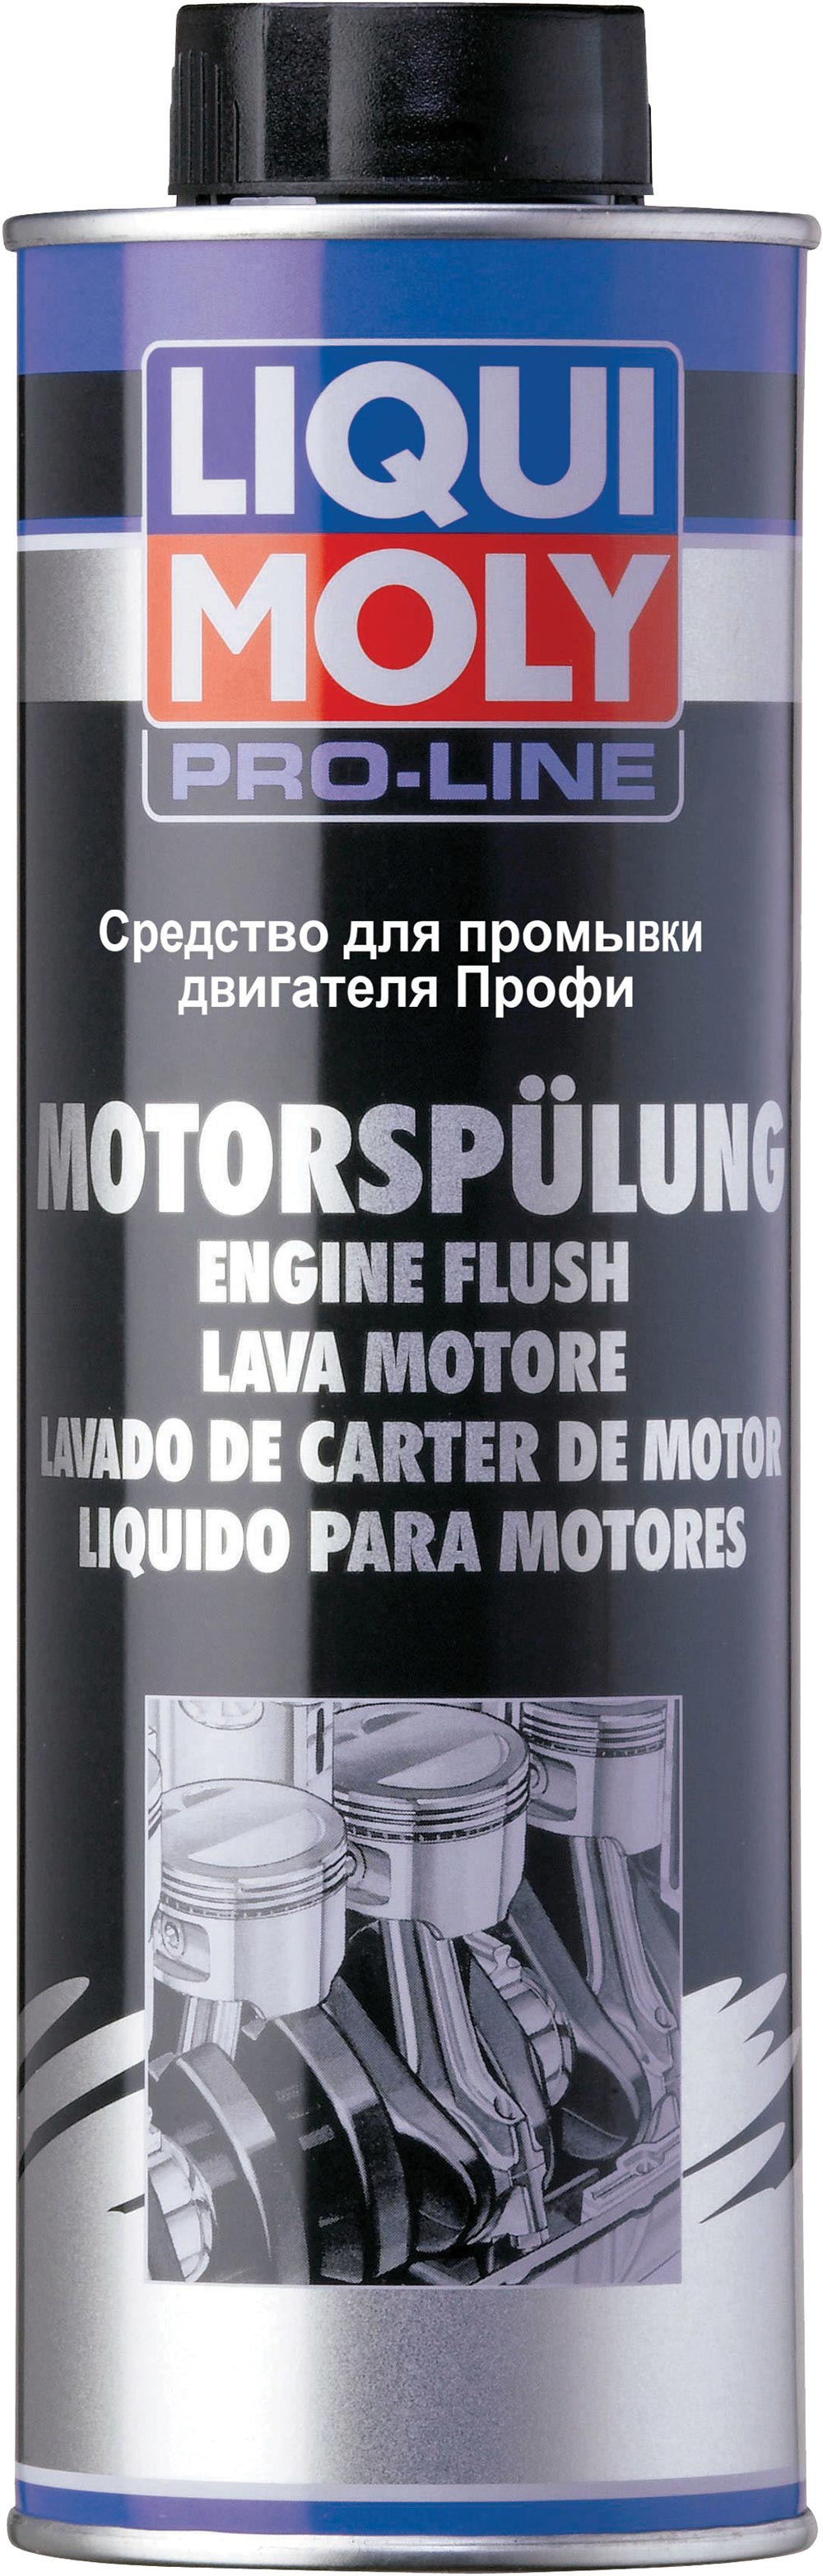 Средство для промывки двигателя Profi MOTOR SPULUNG 0.500мл